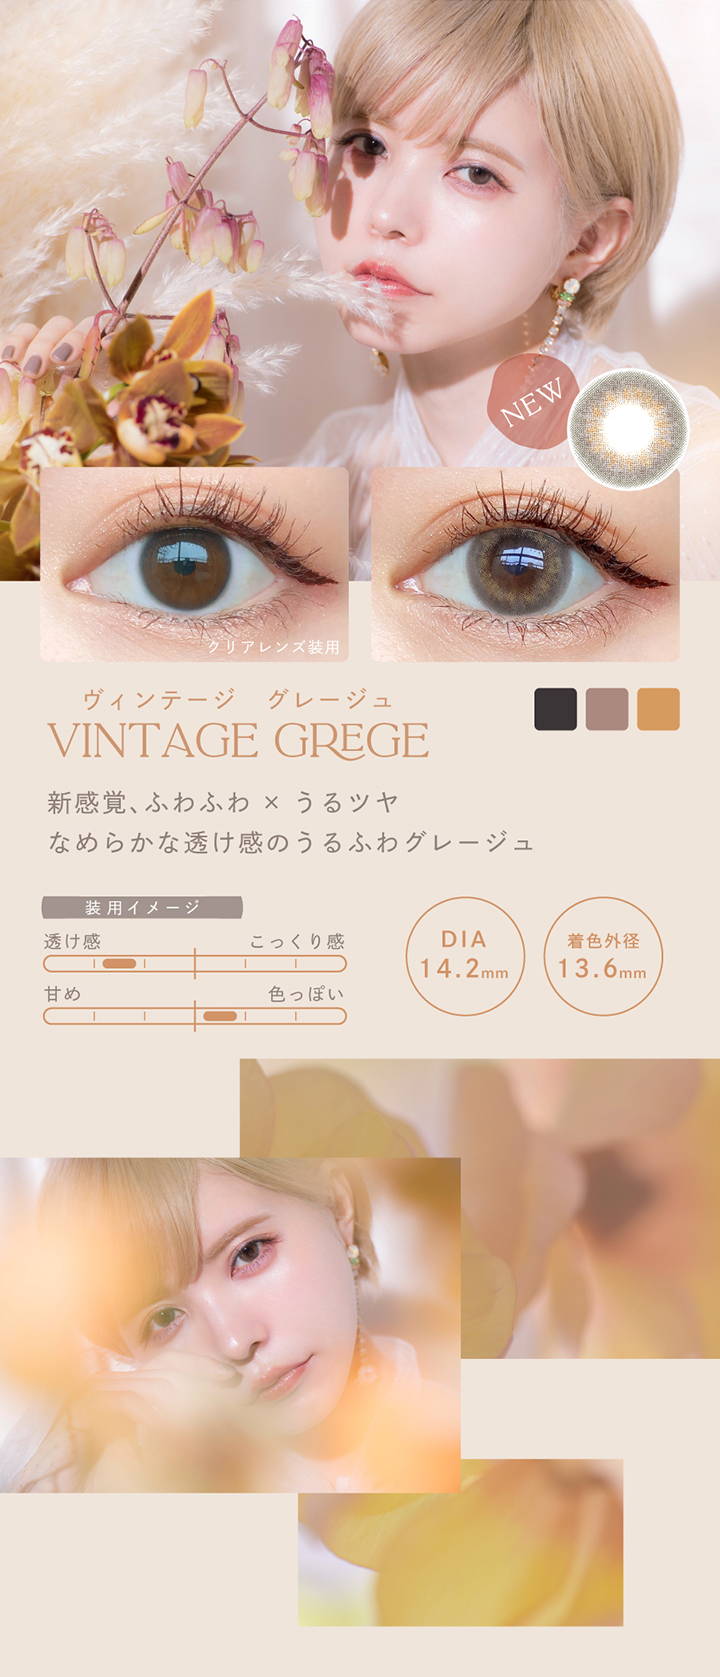 Vintage GREGE(ヴィンテージグレージュ),新感覚、ふわふわ×うるツヤ,なめらかな透け感のうるふわグレージュ,DIA14.2mm,着色外径13.6mm,BC8.5mm|エンジェルカラーバンビヴィンテージワンデー ワンデーコンタクトレンズ